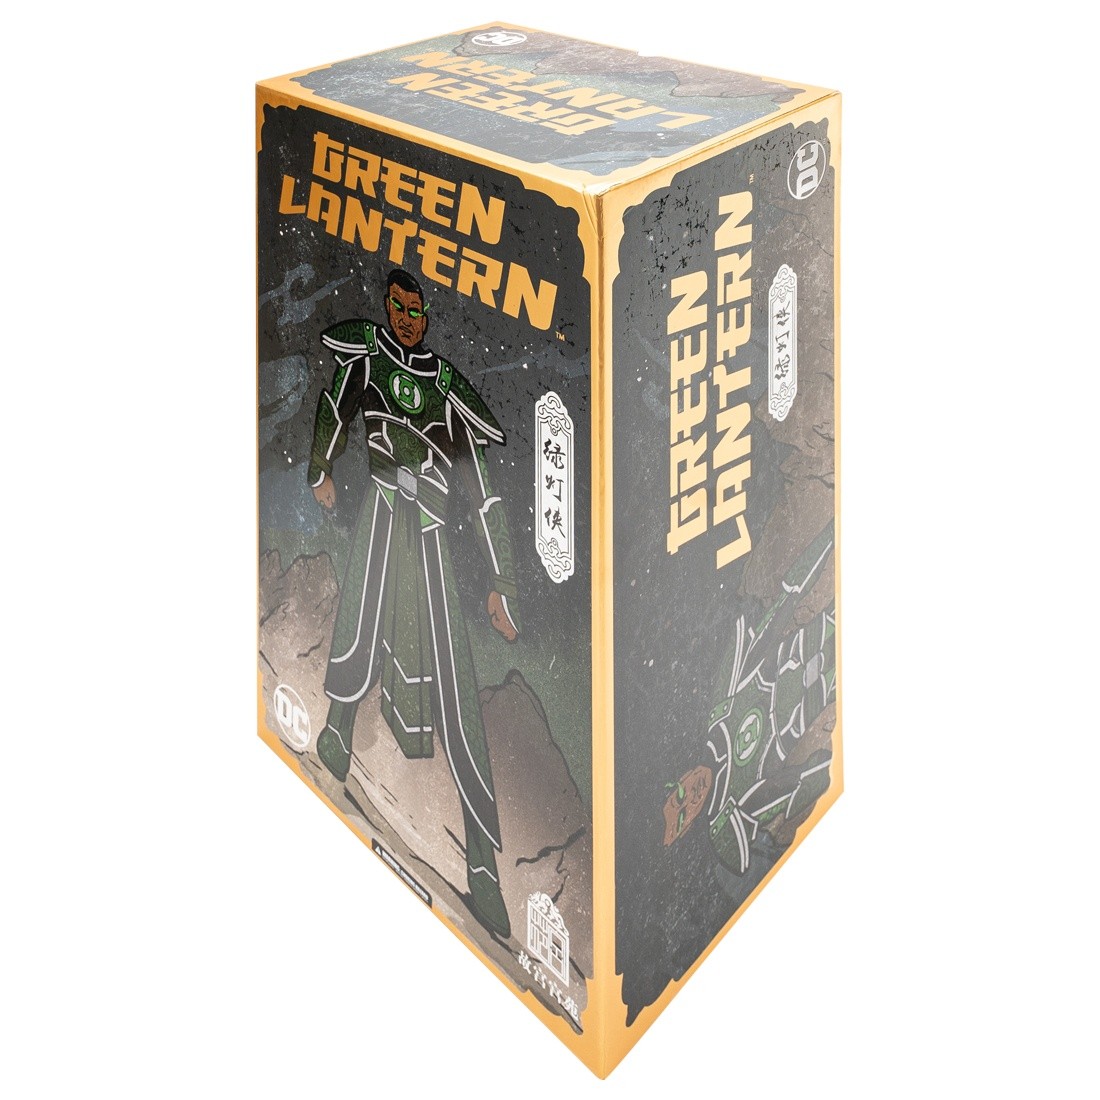 lego green lantern decals